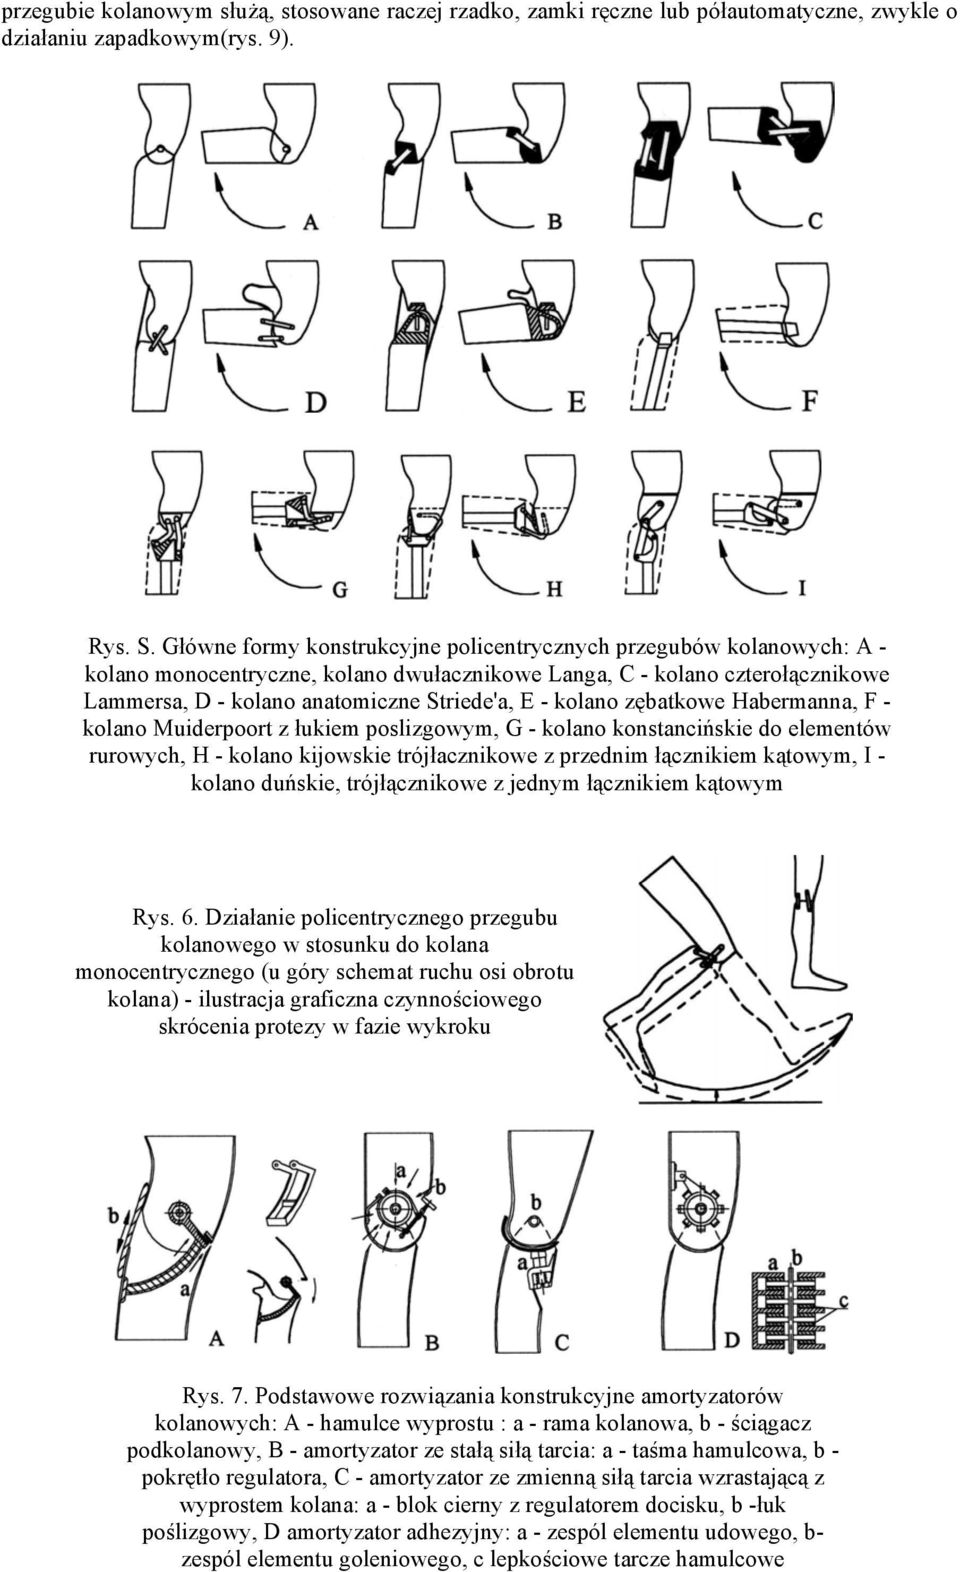 kolano zębatkowe Habermanna, F - kolano Muiderpoort z łukiem poslizgowym, G - kolano konstancińskie do elementów rurowych, H - kolano kijowskie trójłacznikowe z przednim łącznikiem kątowym, I -